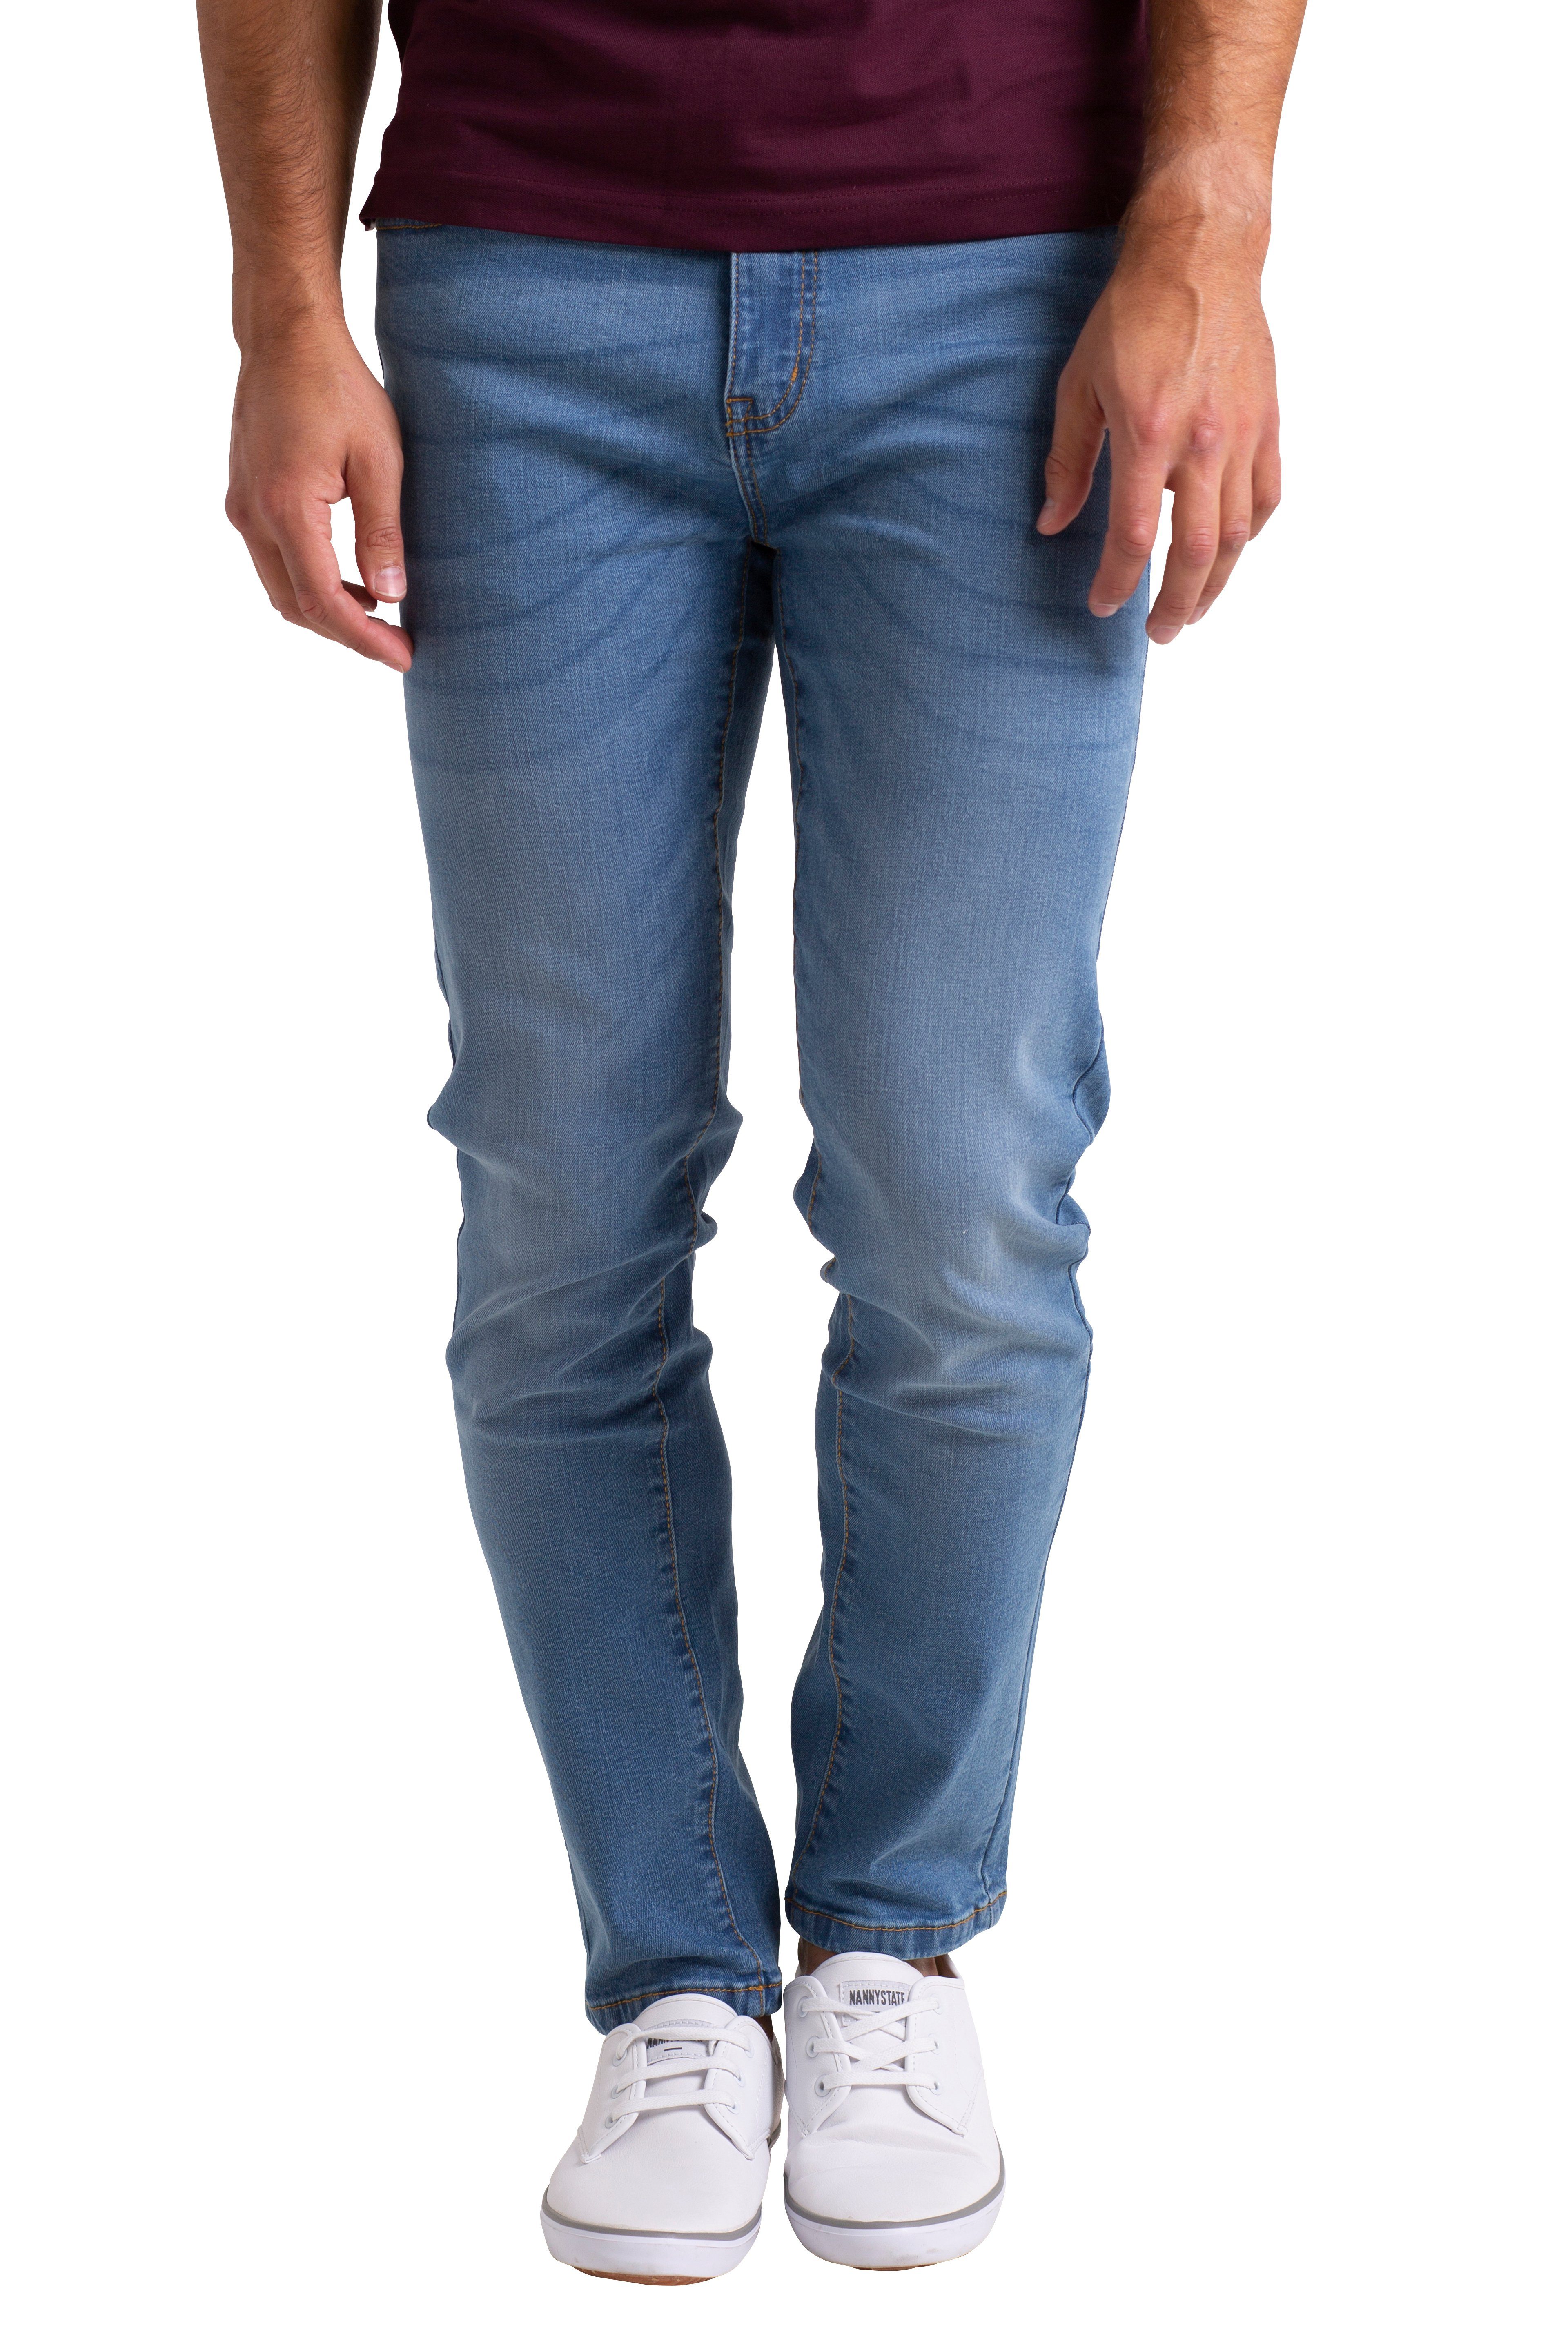 BlauerHafen Slim-fit-Jeans Herren Stretch Denim Jeans Schlanke Passform strecken Dünn Denim Hose Hellblau